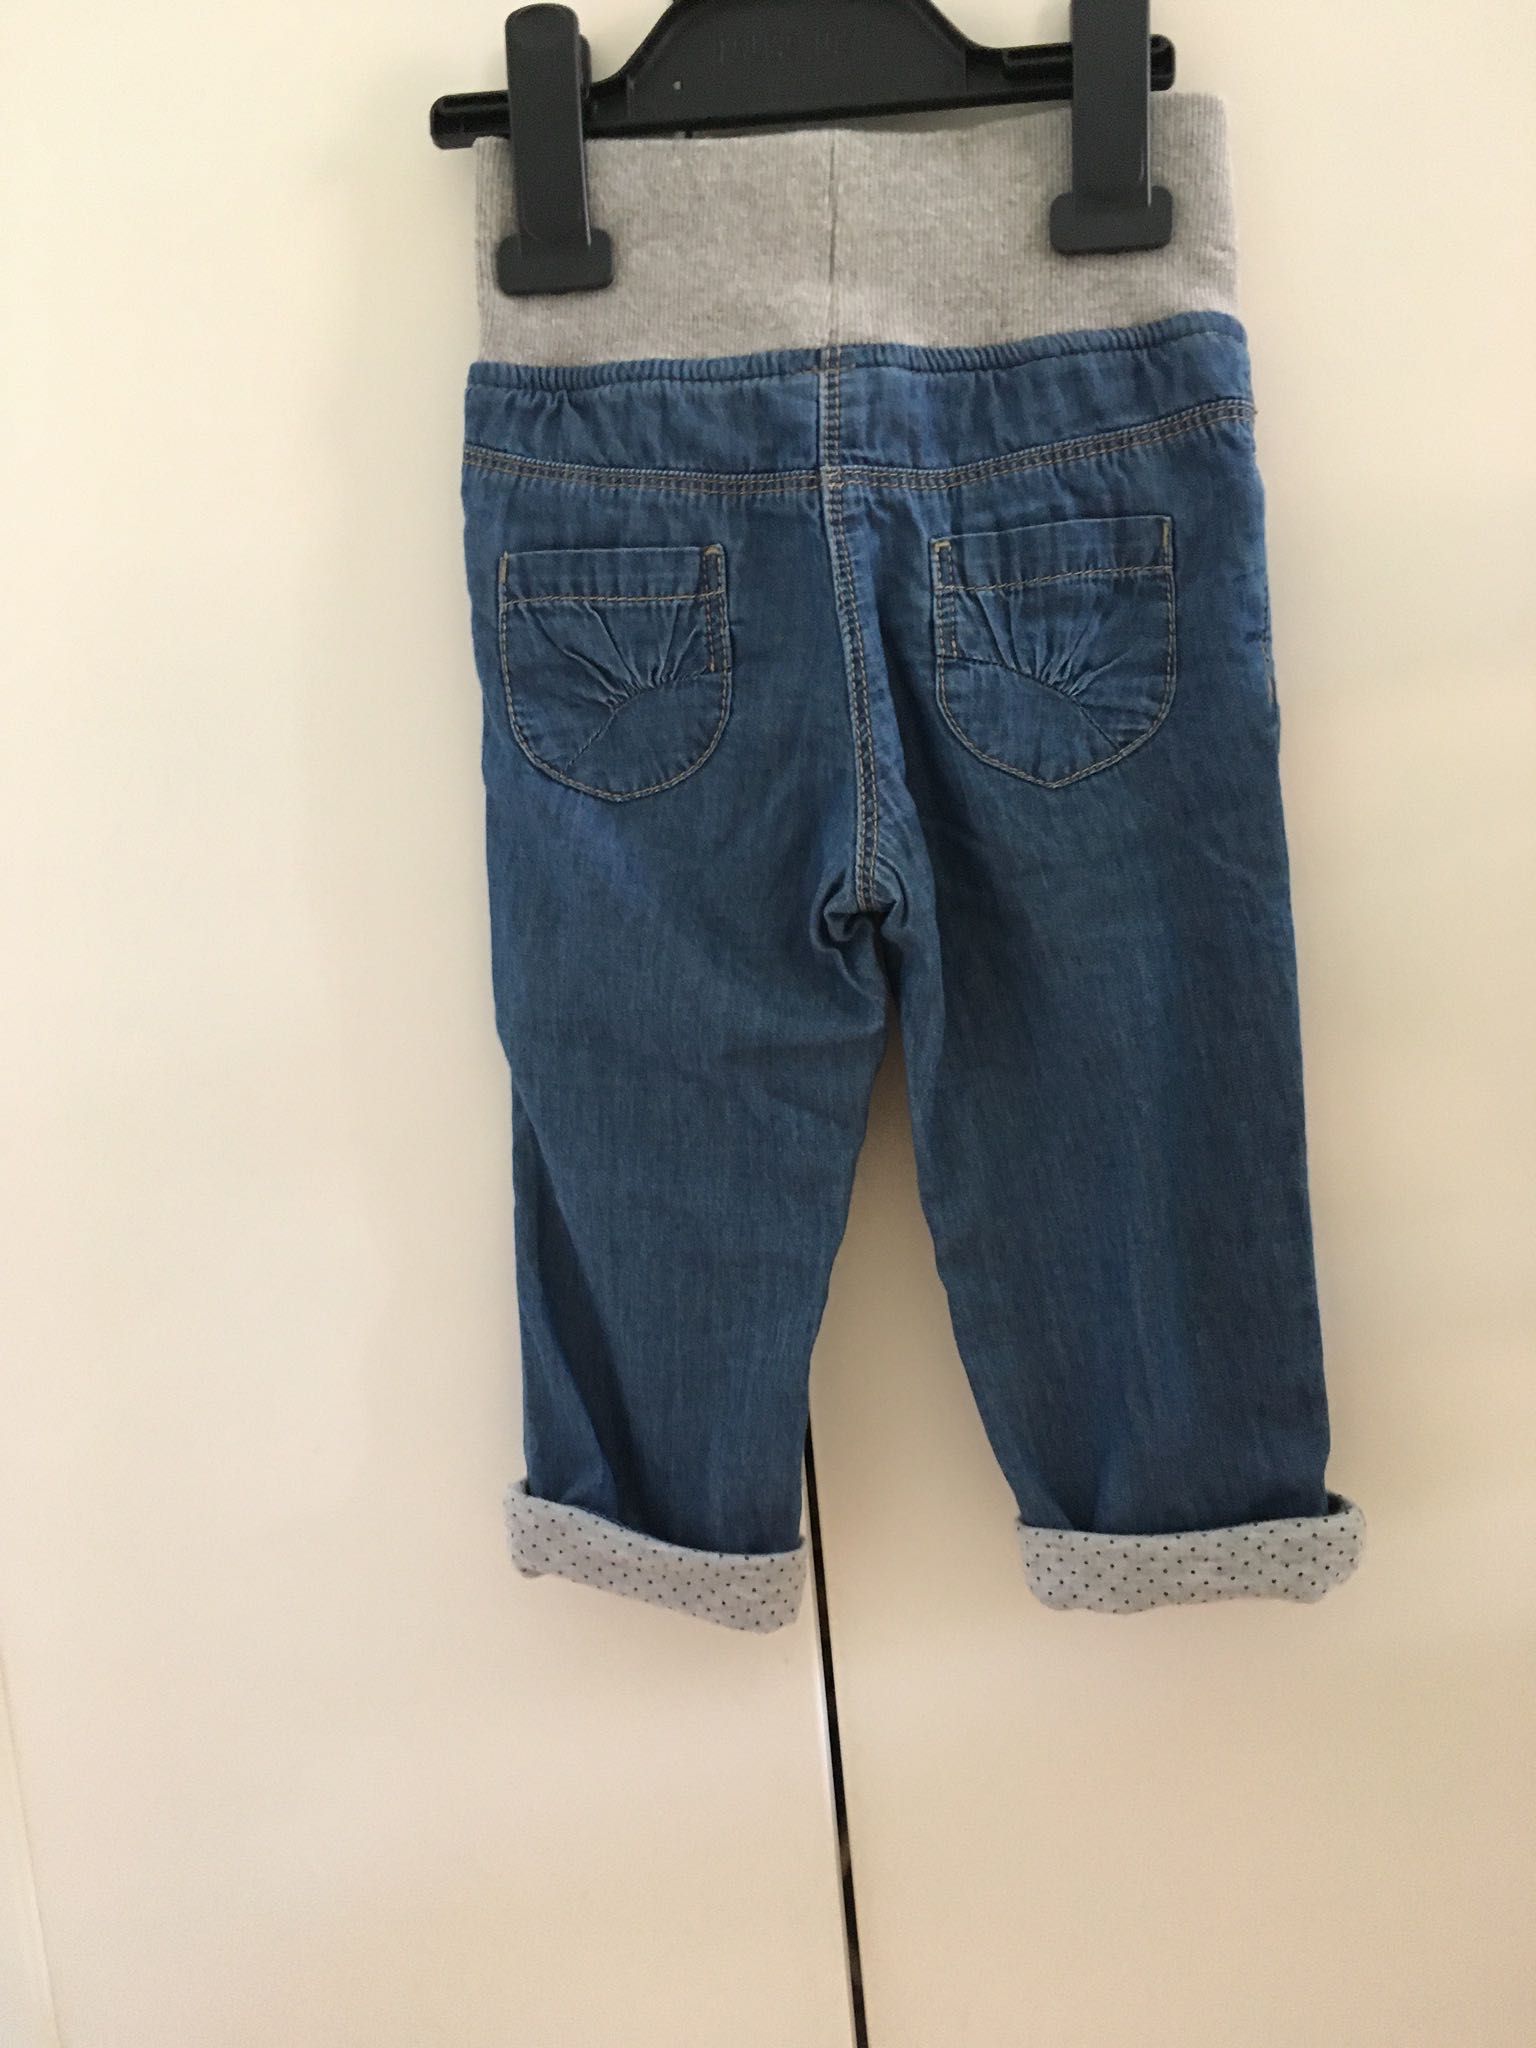 Joggersy, jeansy, spodnie ze ściągaczem, rozmiar 80, nowe C&A.